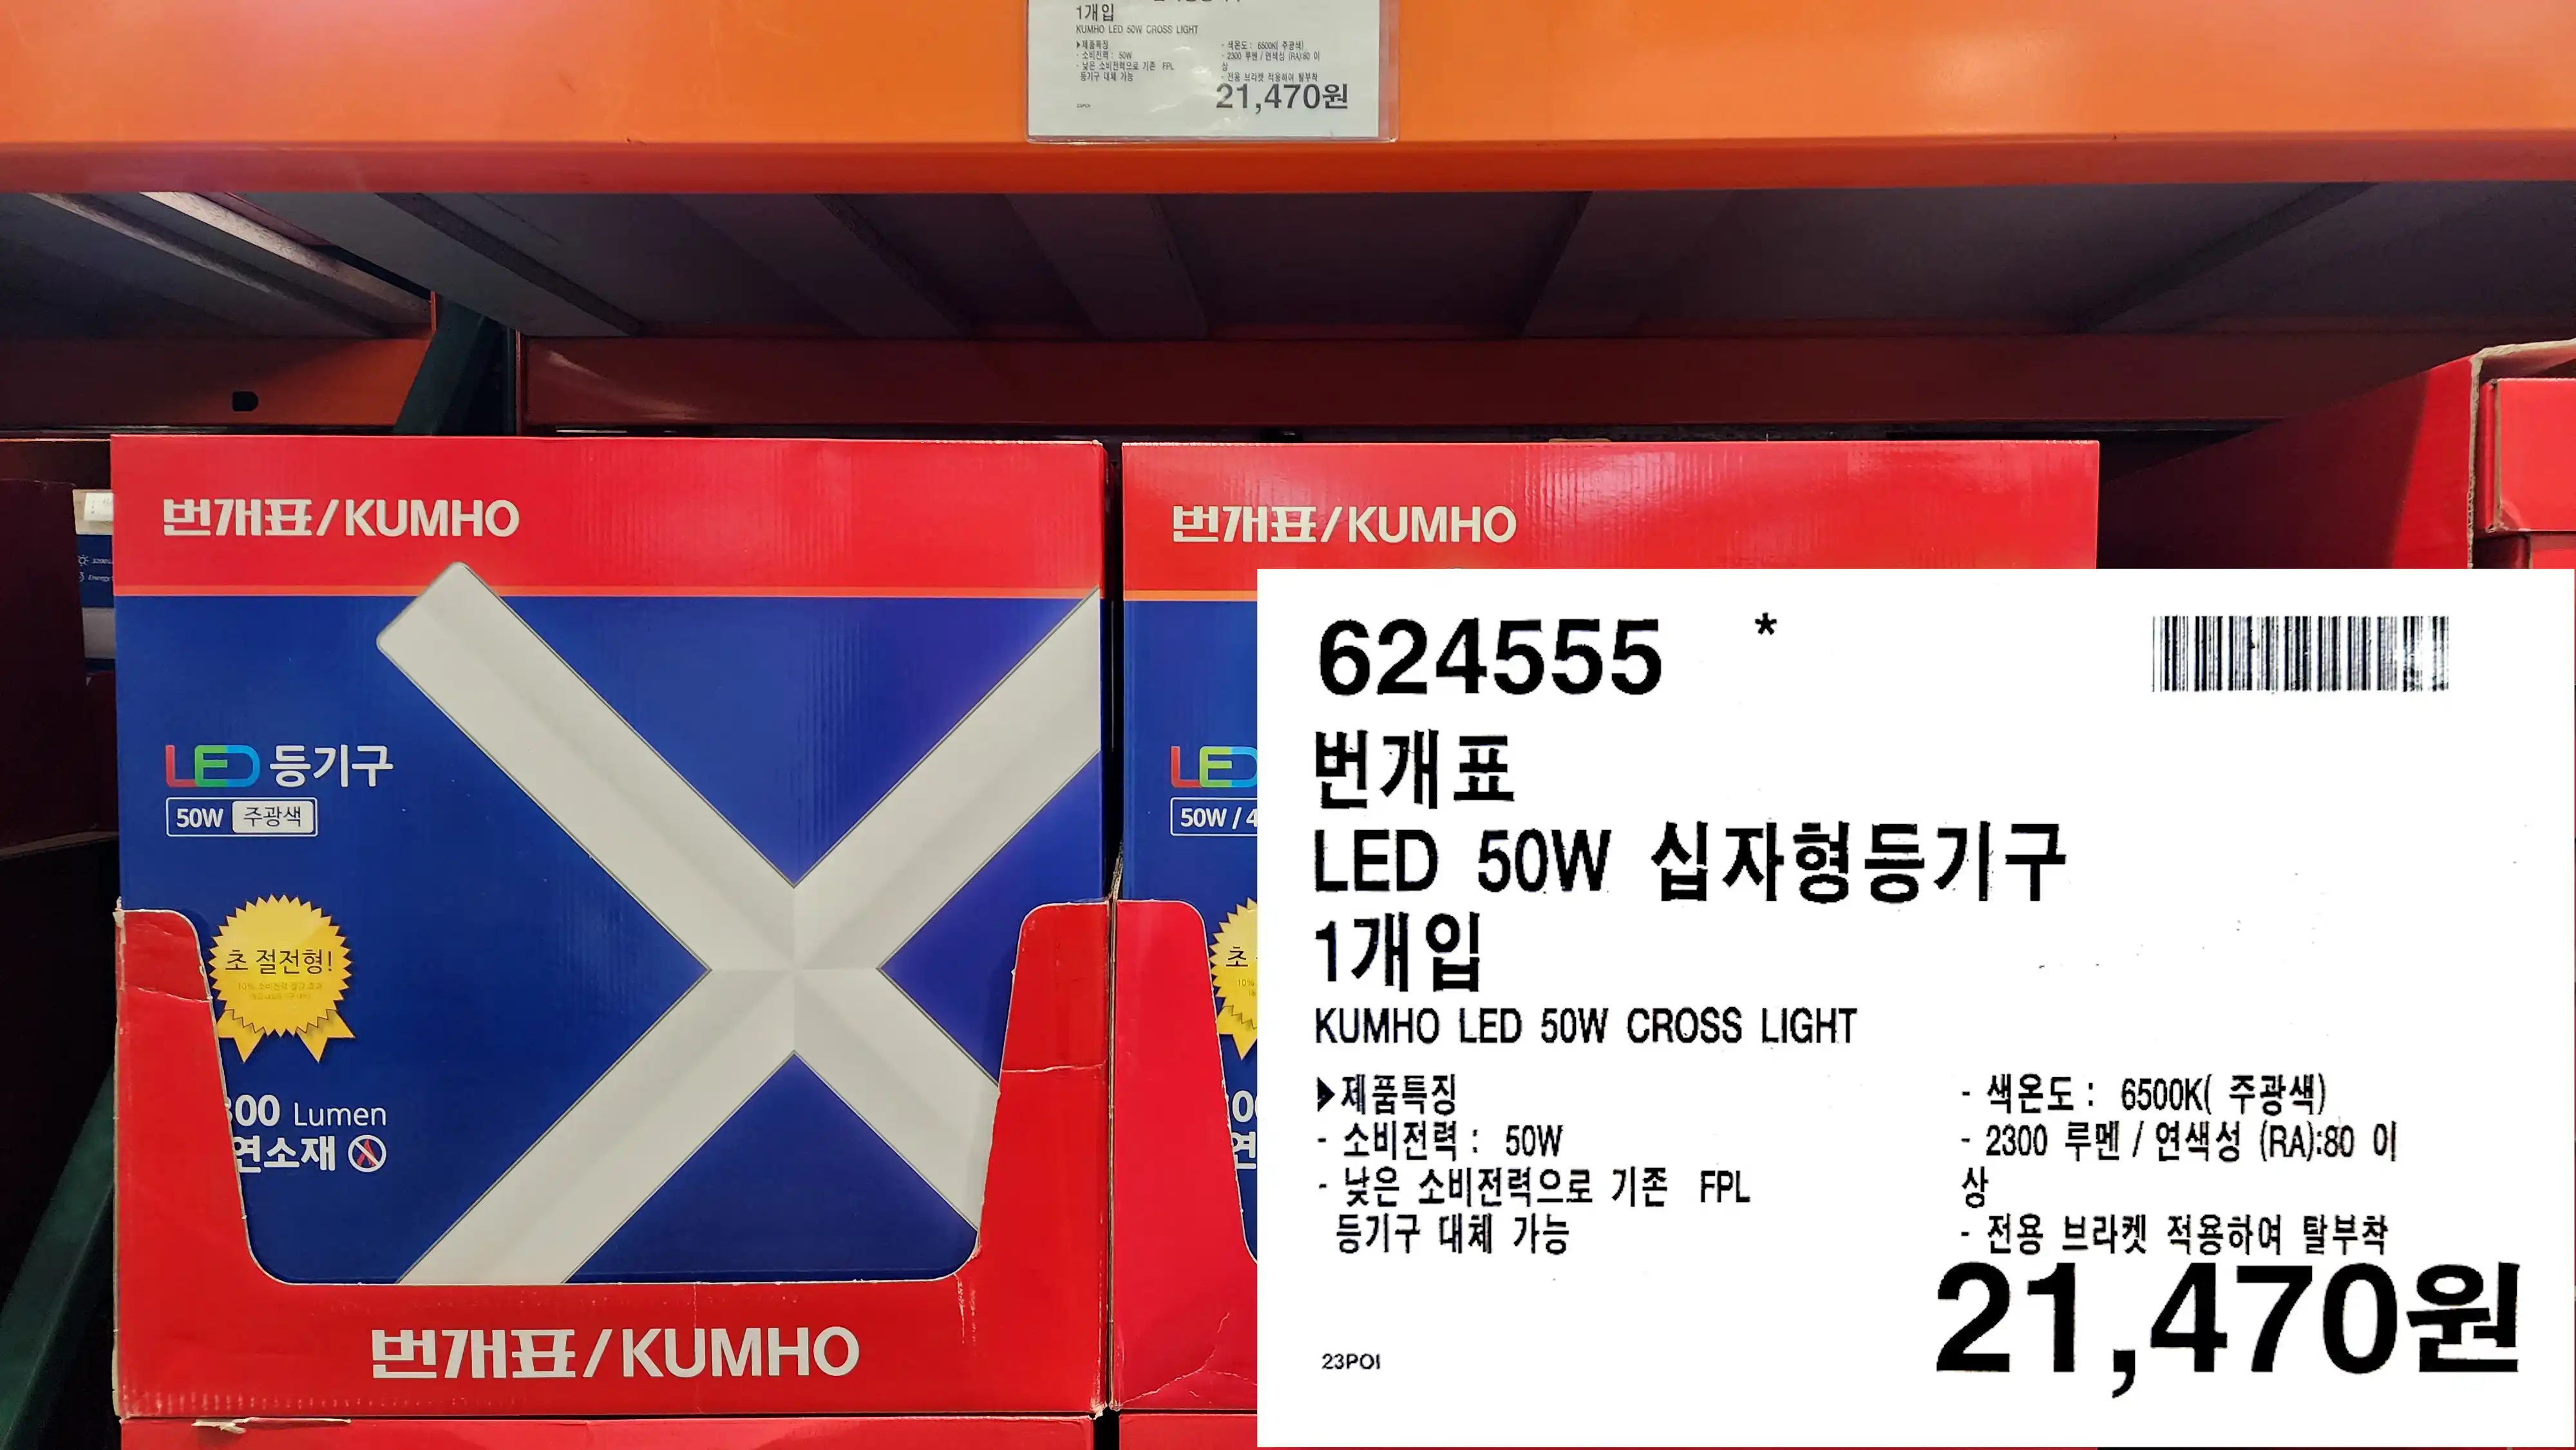 번개표
LED 50W 십자형등기구
1개입
KUMHO LED 50W CROSS LIGHT
▶ 제품특징
- 소비전력 : 50W
- 낮은 소비전력으로 기존 FPL
등기구 대체 가능
- 색온도 : 6500K( 주광색)
- 2300 루멘/ 연색성 (RA):80 이상
-전용 브라켓 적용하여 탈부착
21&#44;470원